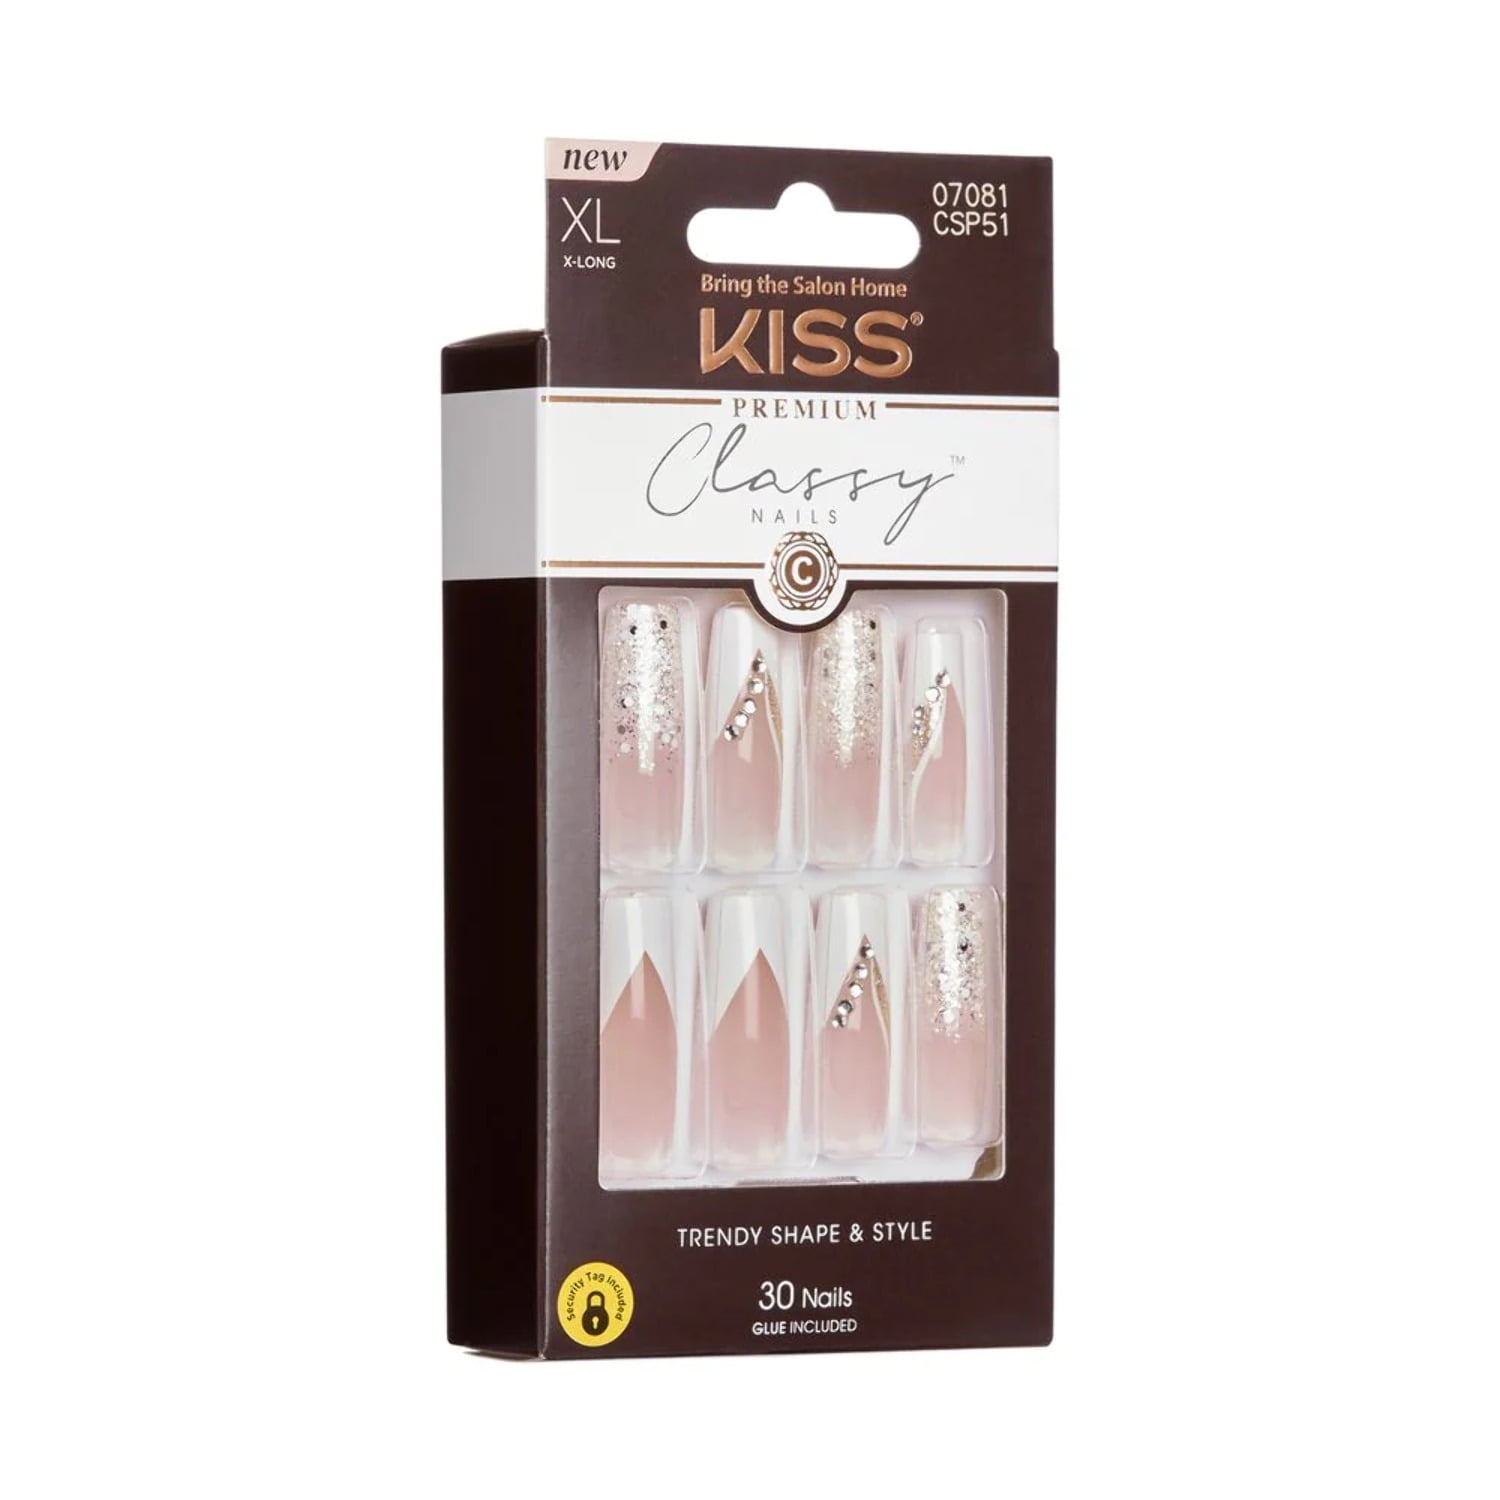 KISS - CLASSY NAILS PREMIUM - MI BONITA - Walmart.com